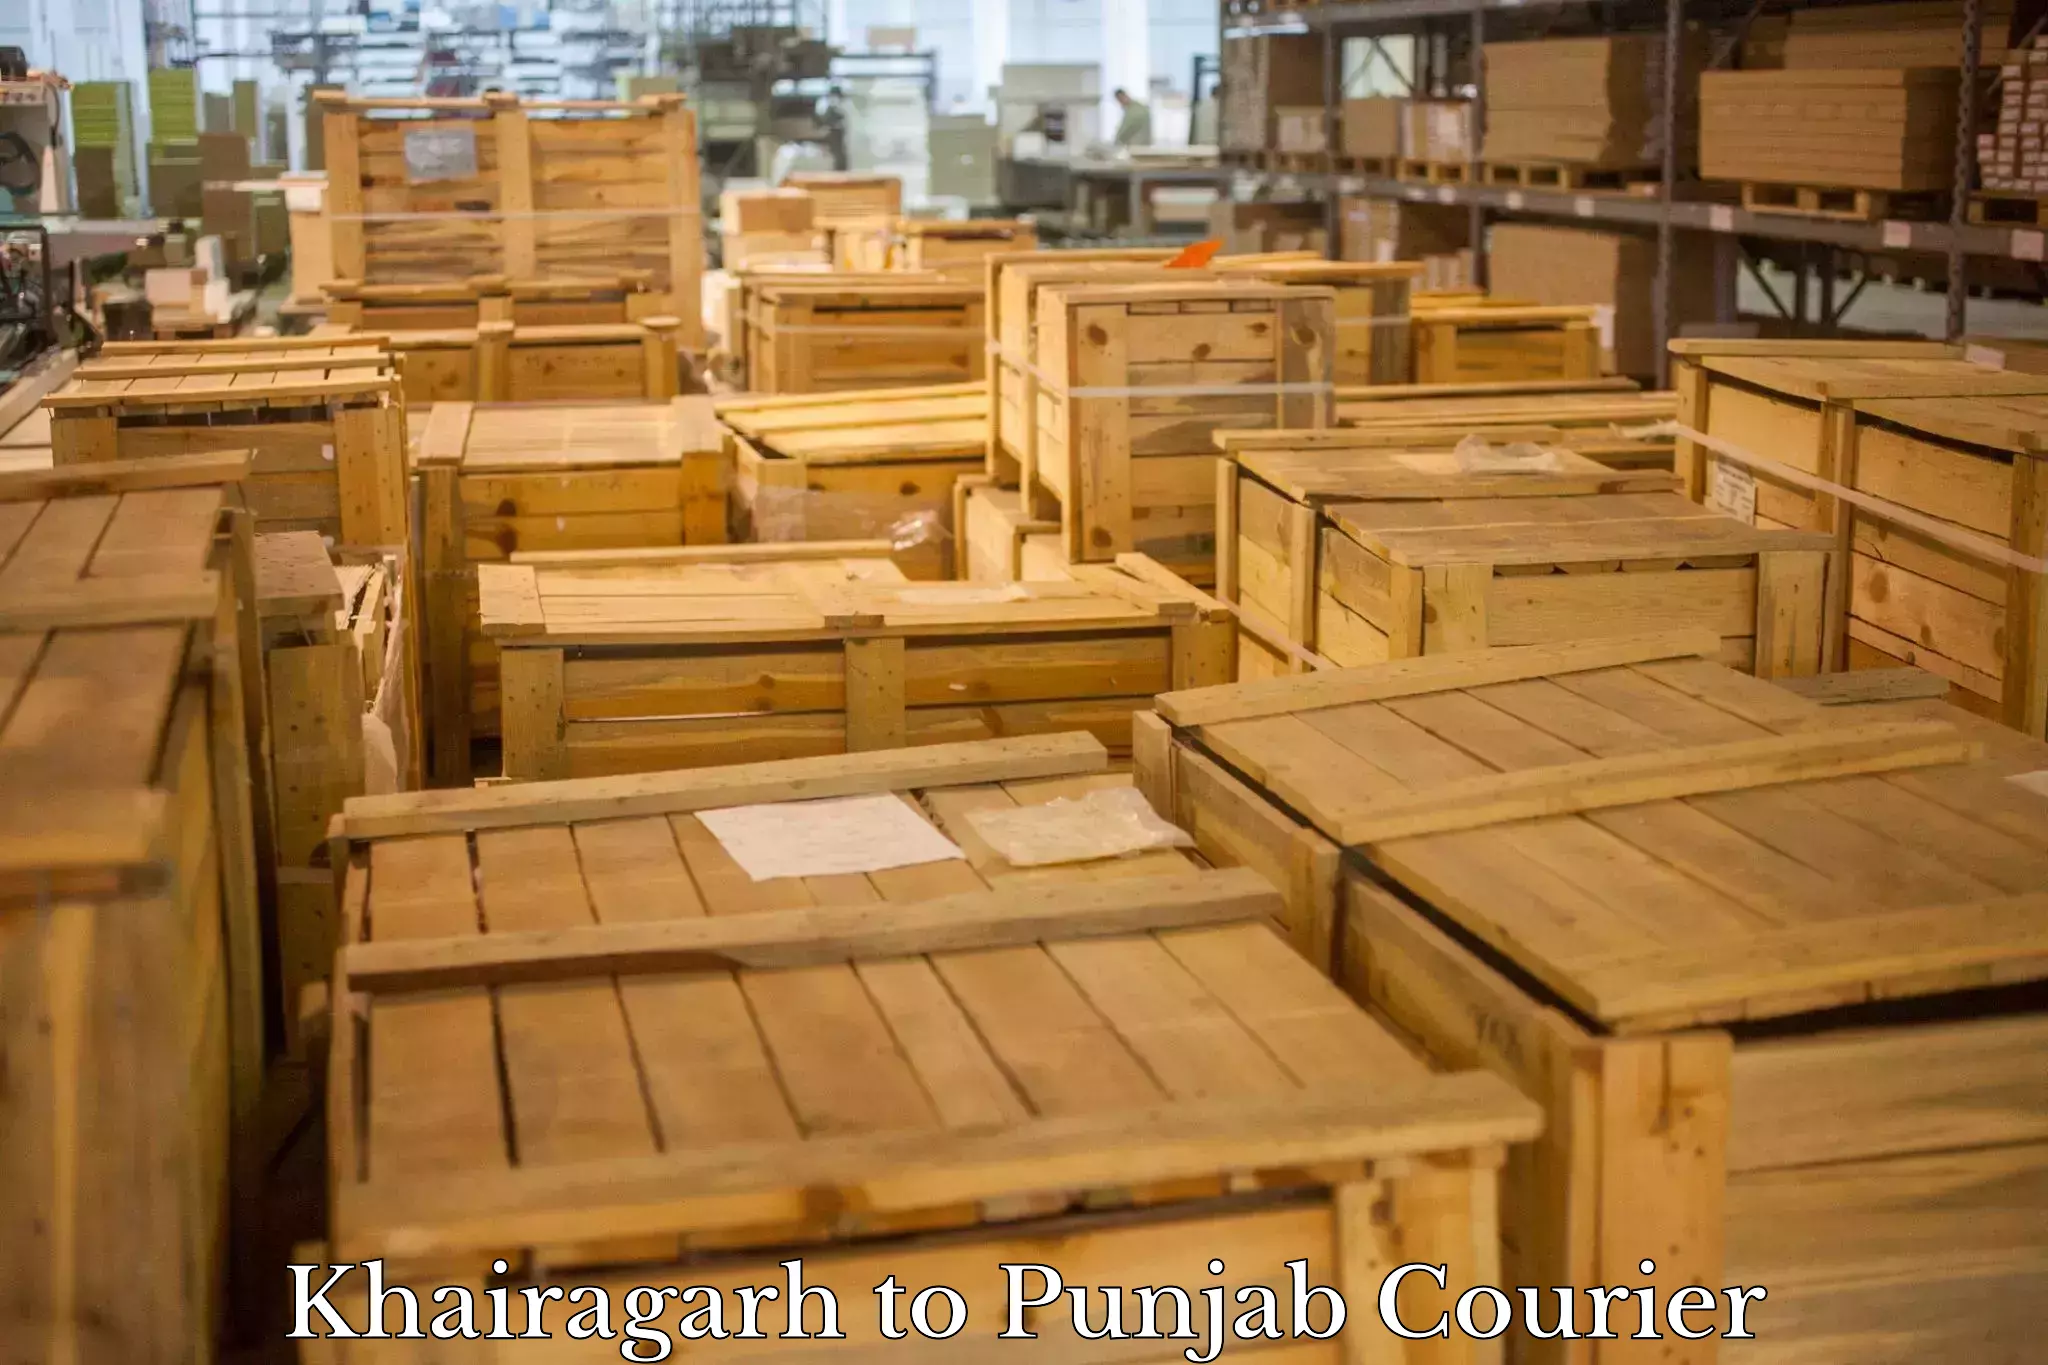 Ground shipping Khairagarh to Punjab